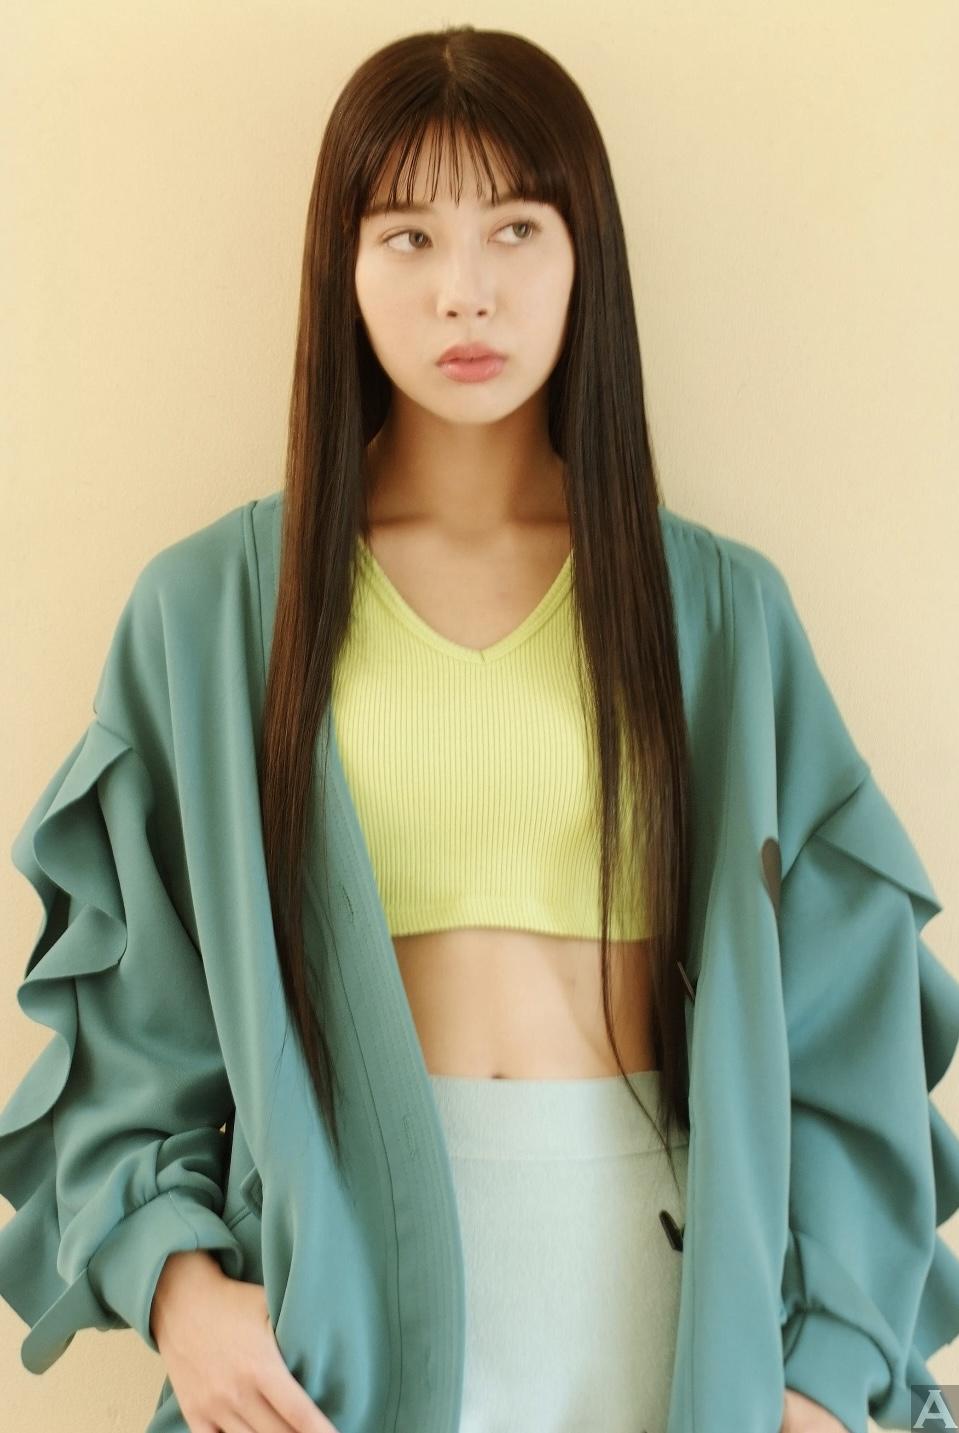 東京外国人モデル事務所アクアモデル所属のハーフモデルのキアナ